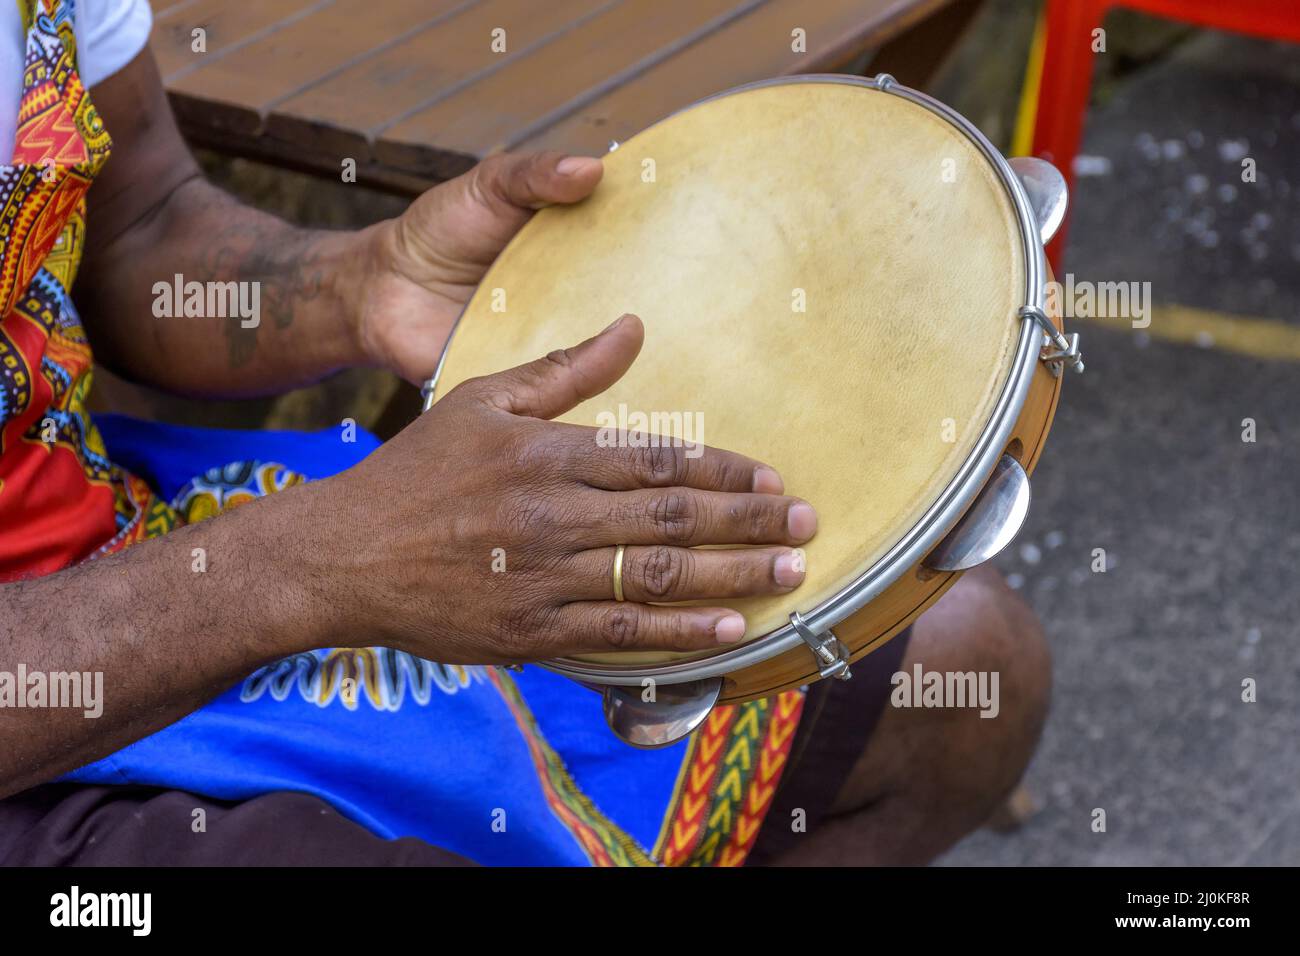 Brazilian samba performance with musician hands playing tambourine Stock Photo